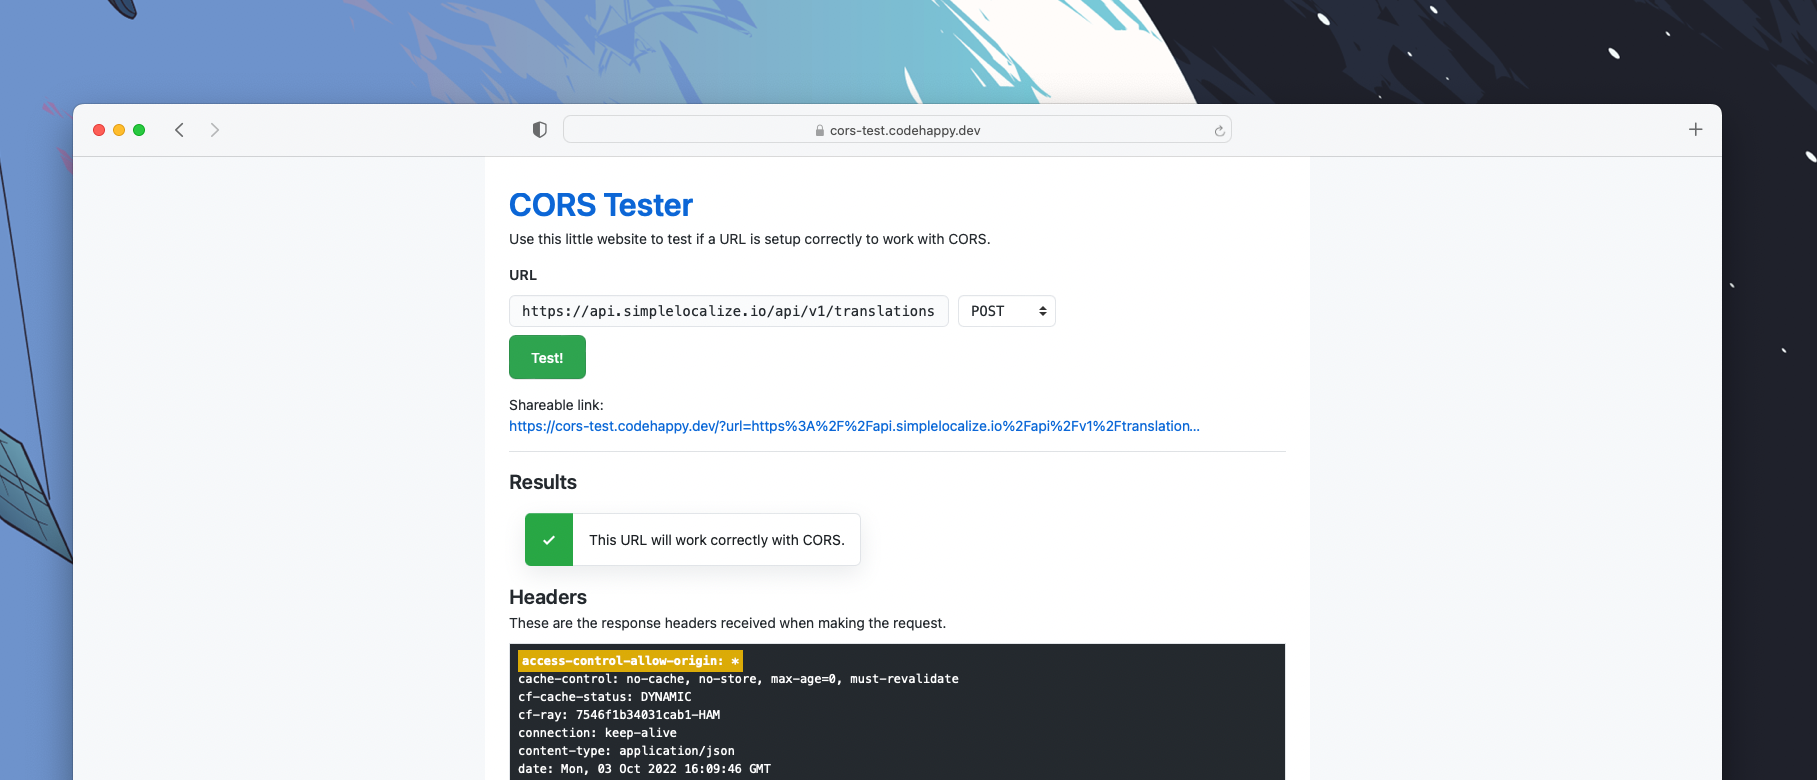 تستر CORS مبتنی بر وب منبع باز رایگان